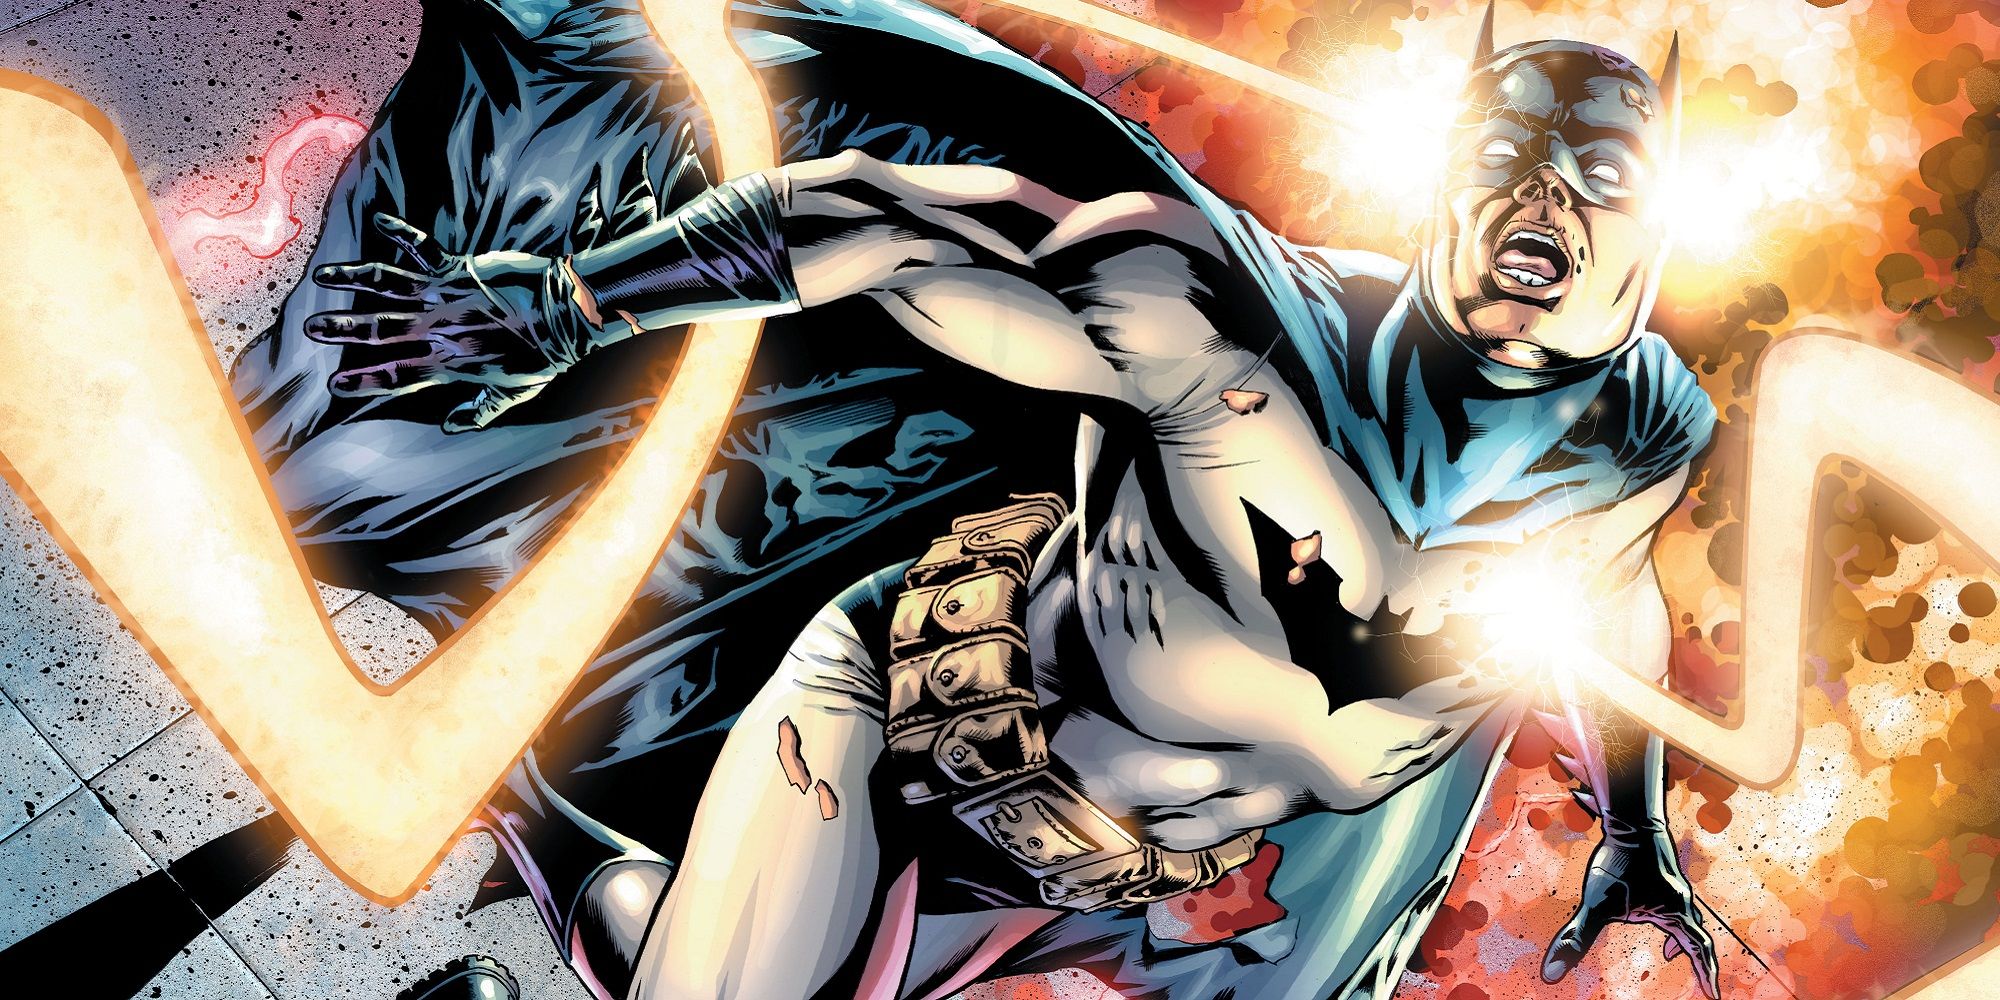 Darkseid killing Batman in DC Comics